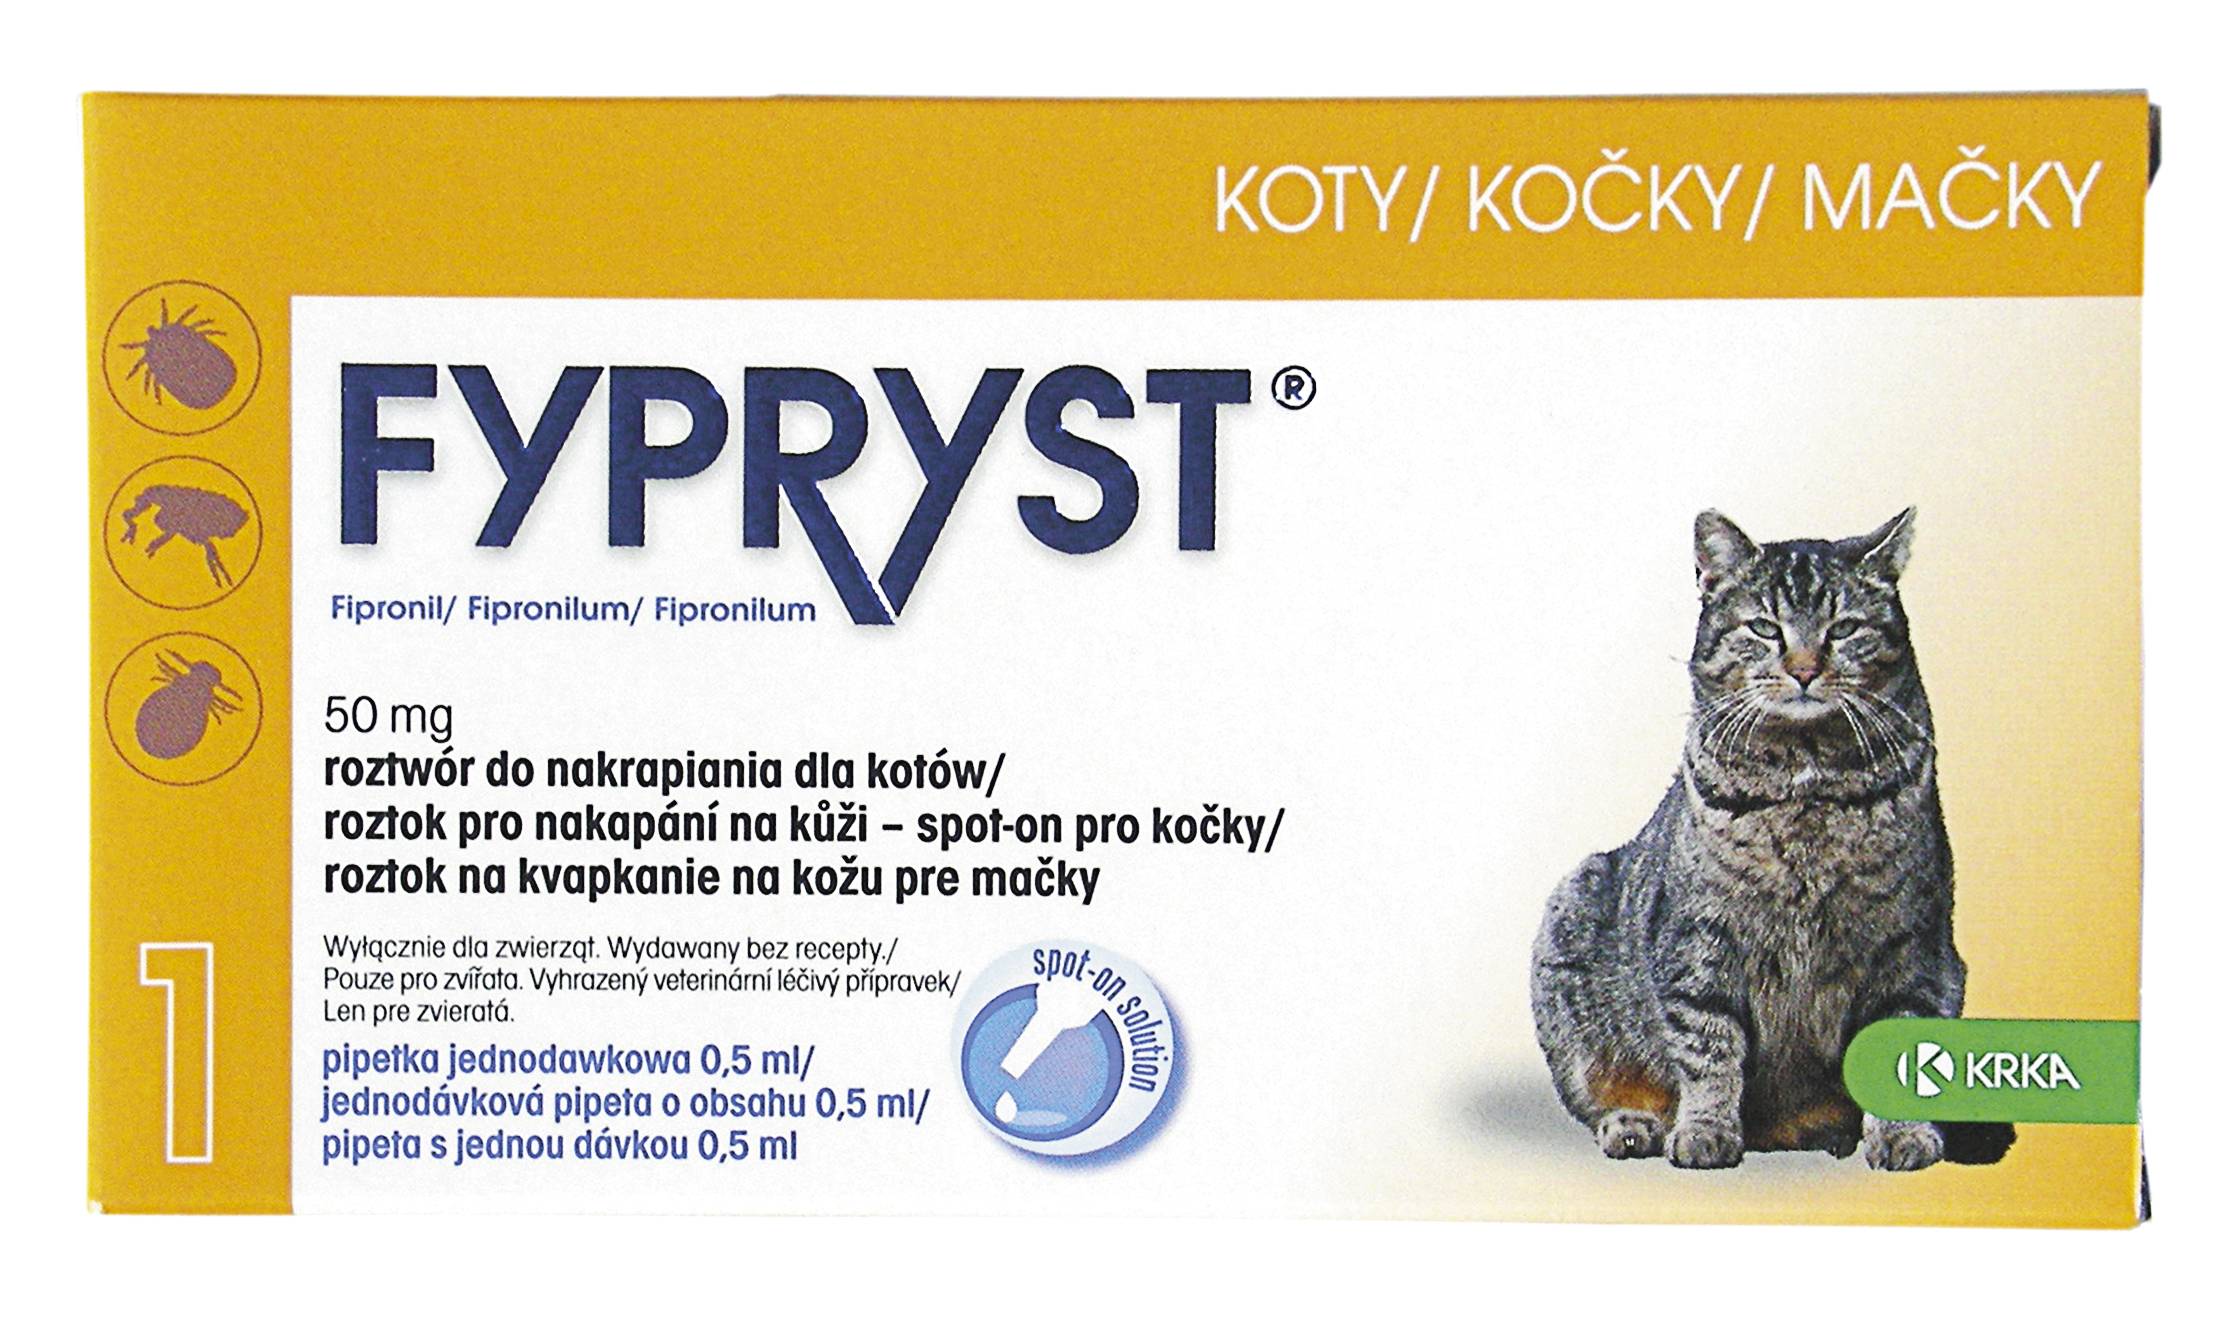 Фиприст для кошек (капли и спрей): разбор состава, цена + отзывы ветеринаров и владельцев животных об эффективности препарата